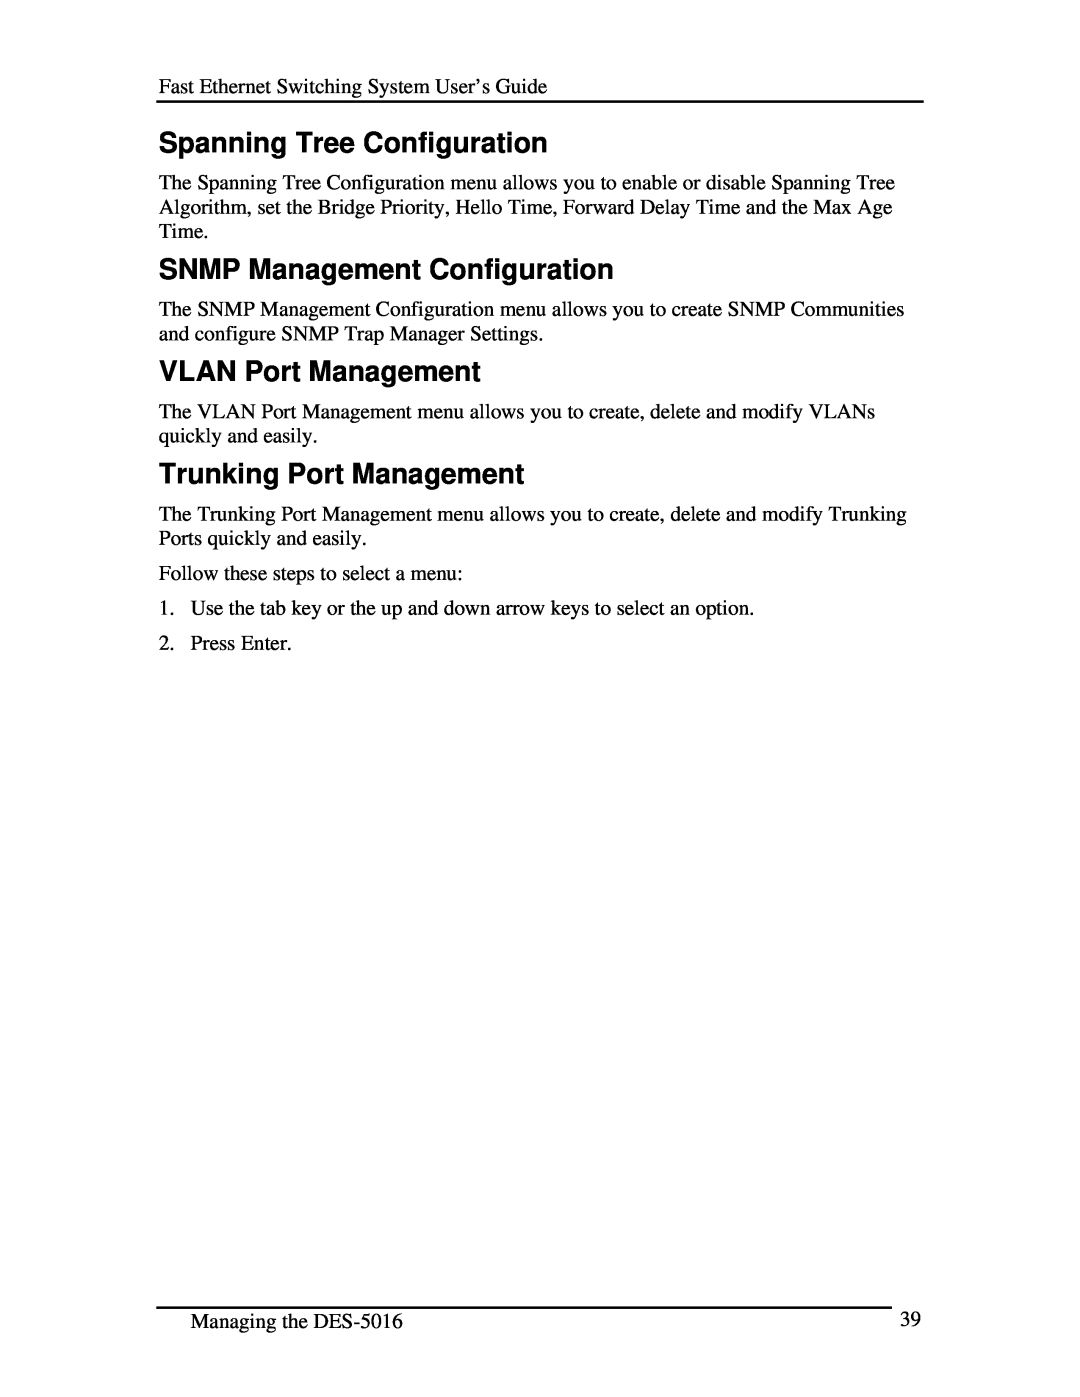 D-Link DES-5016 Spanning Tree Configuration, SNMP Management Configuration, VLAN Port Management, Trunking Port Management 